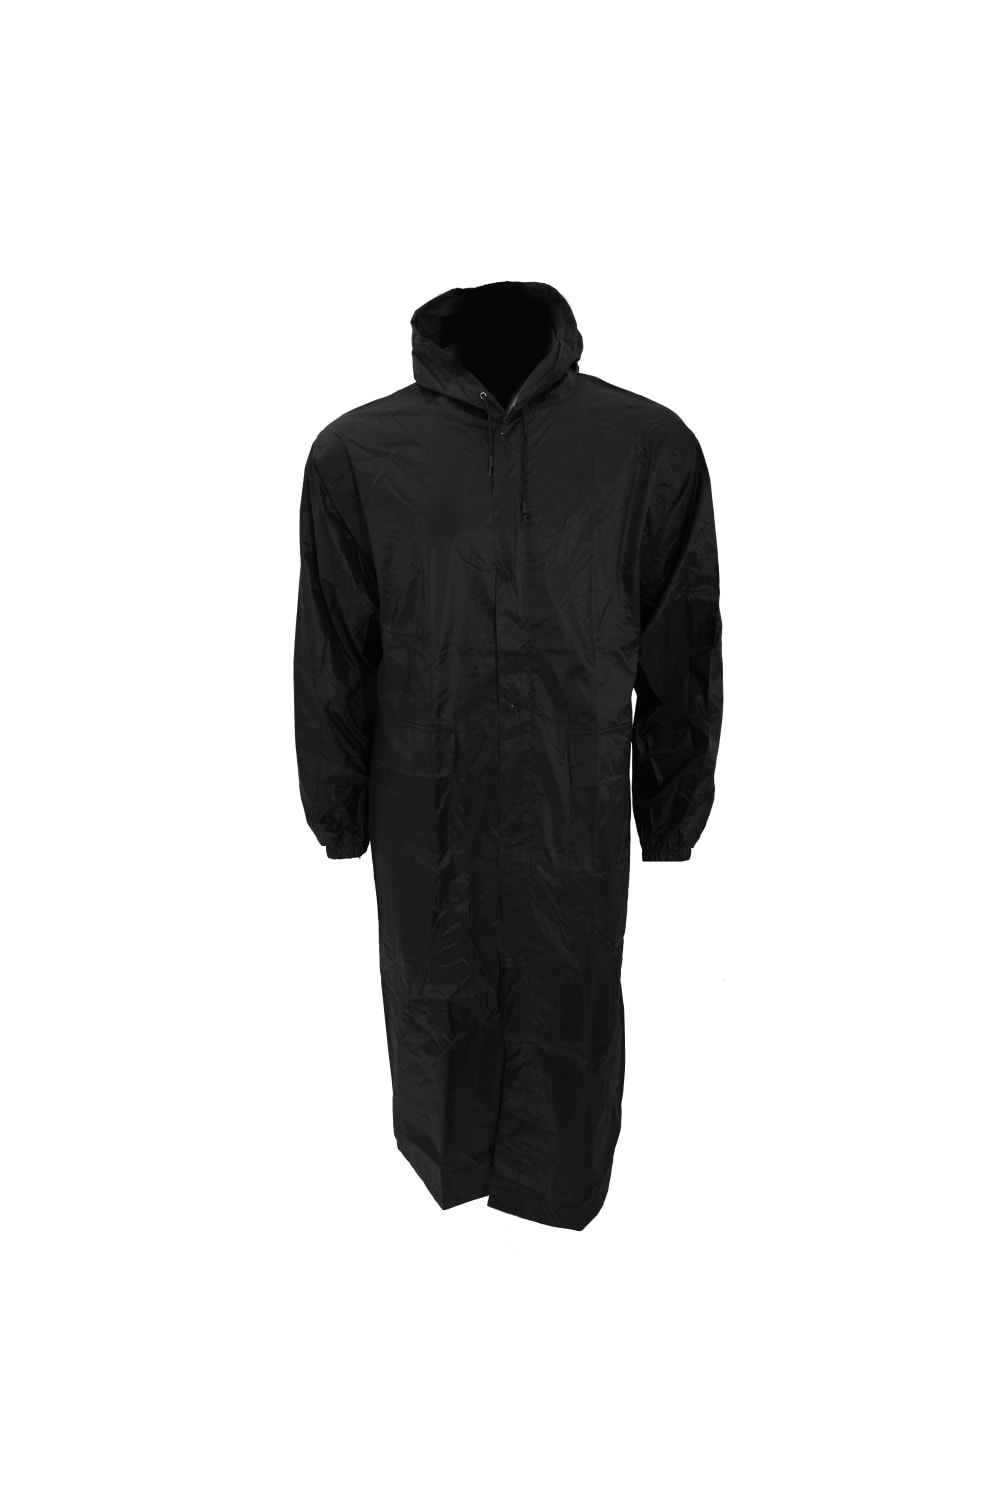 Mens Long Length Waterproof Hooded Coat/Jacket - Black